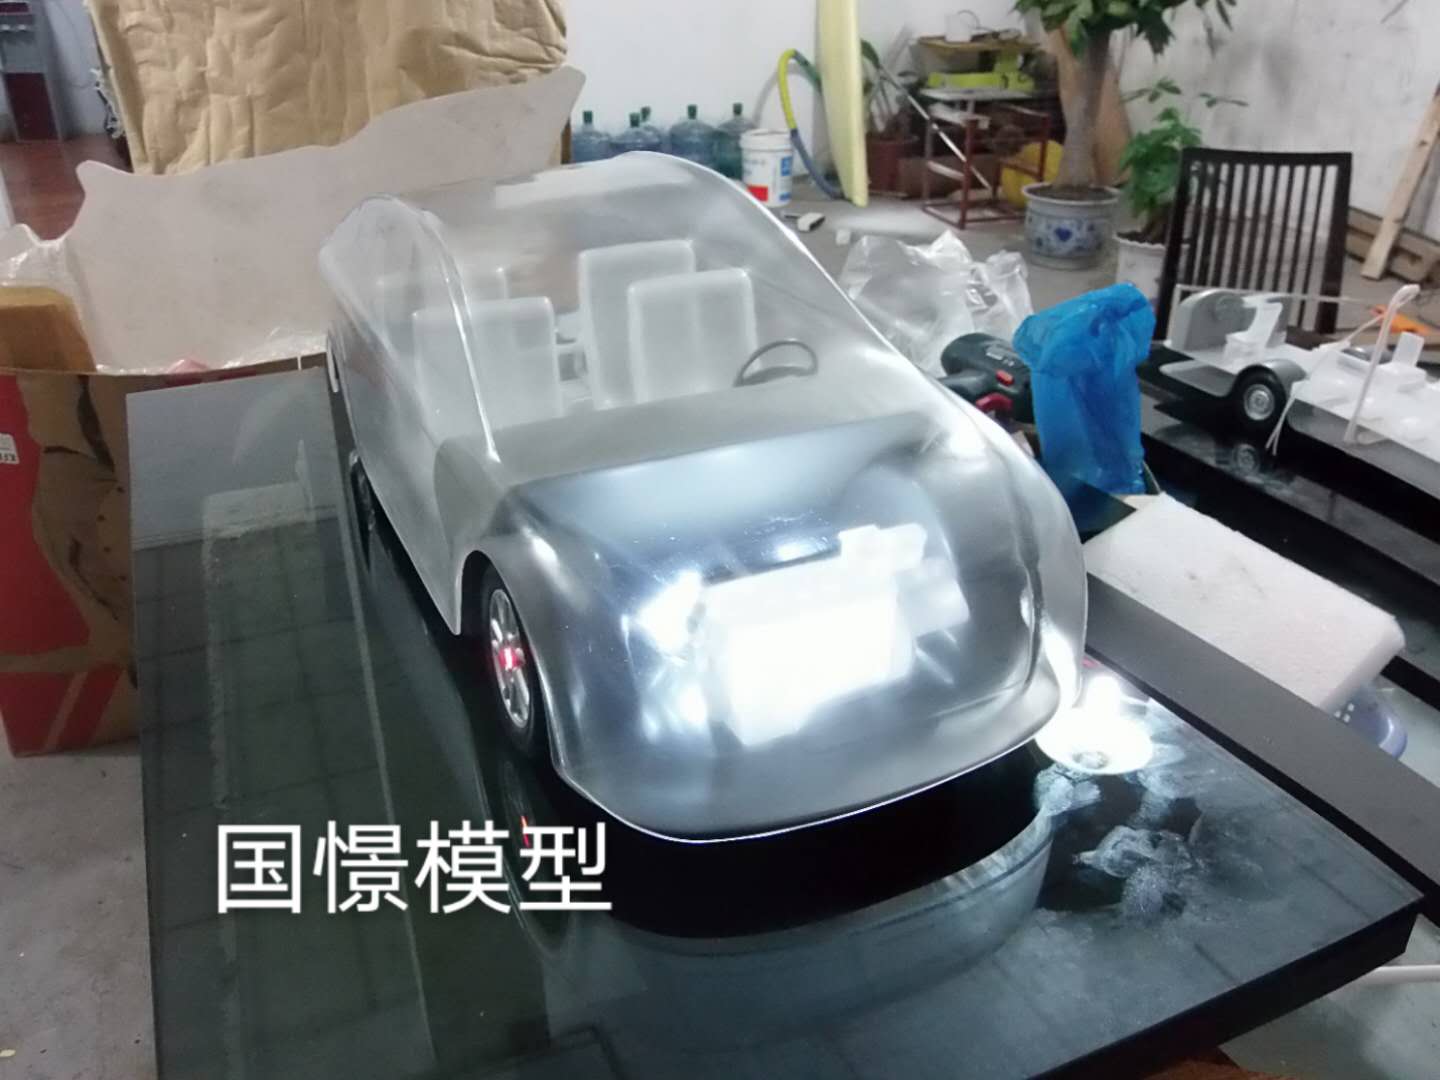 拉孜县透明车模型